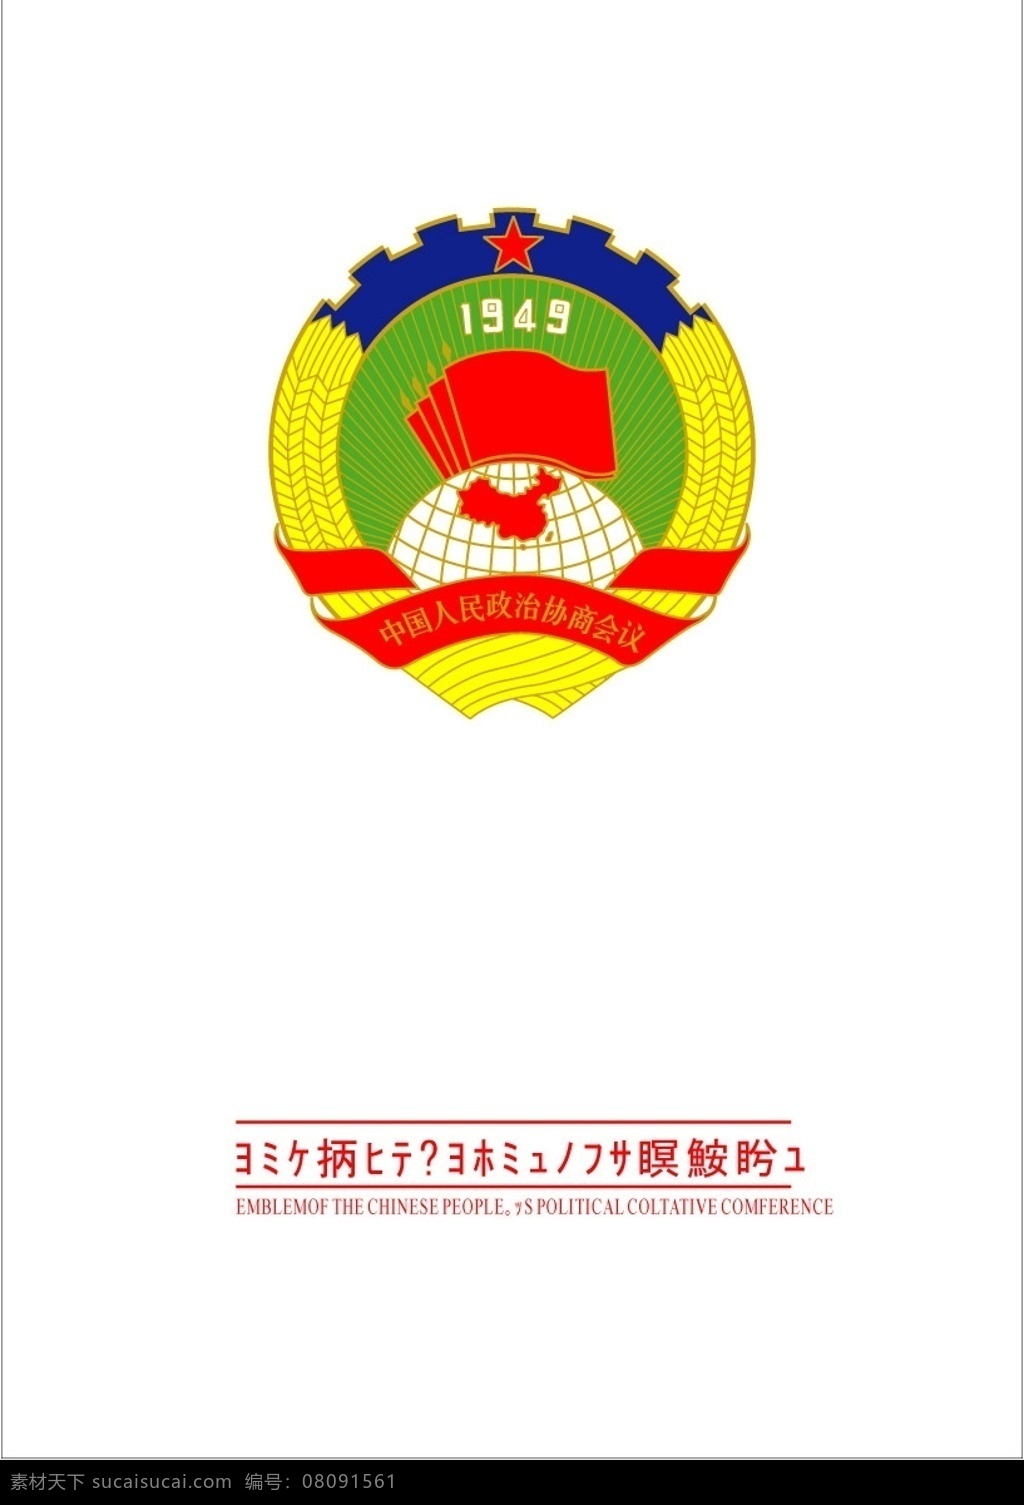 中国人民政治协商会议 会徽 标识标志图标 公共标识标志 矢量图库